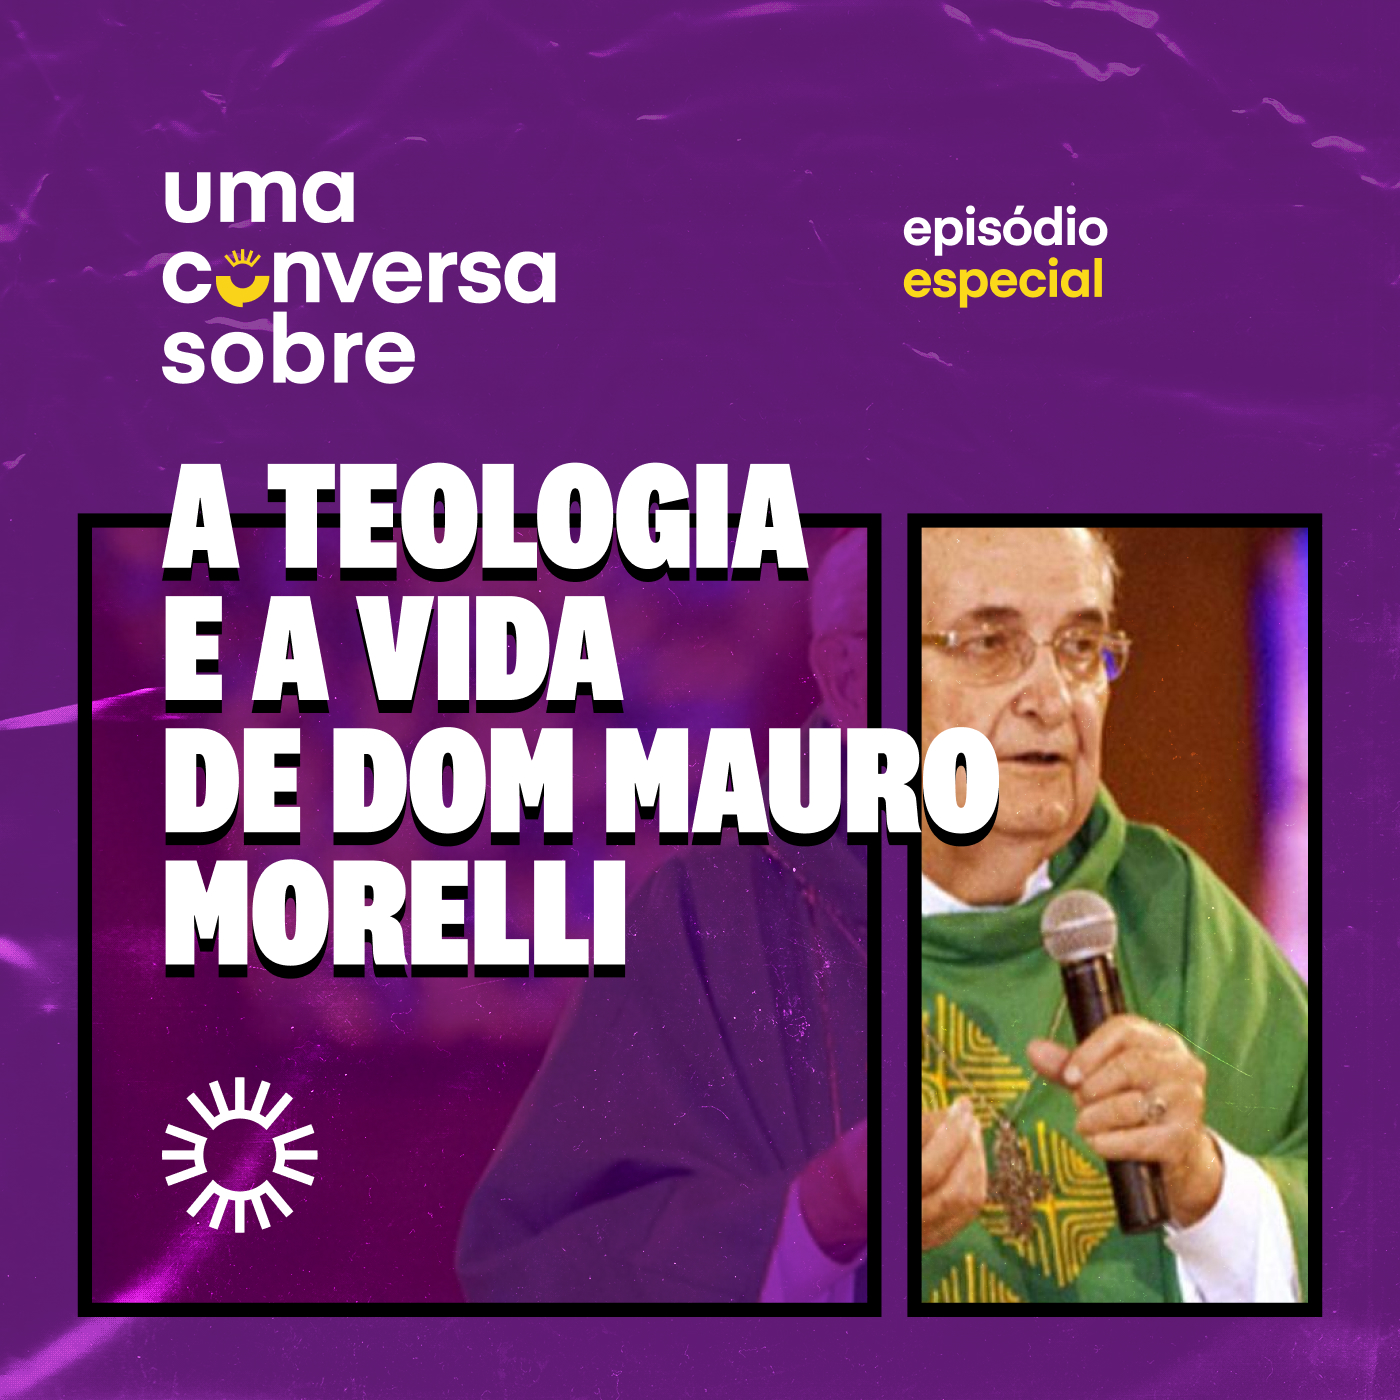 Especial: Teologia e Vida de Dom Mauro Morelli